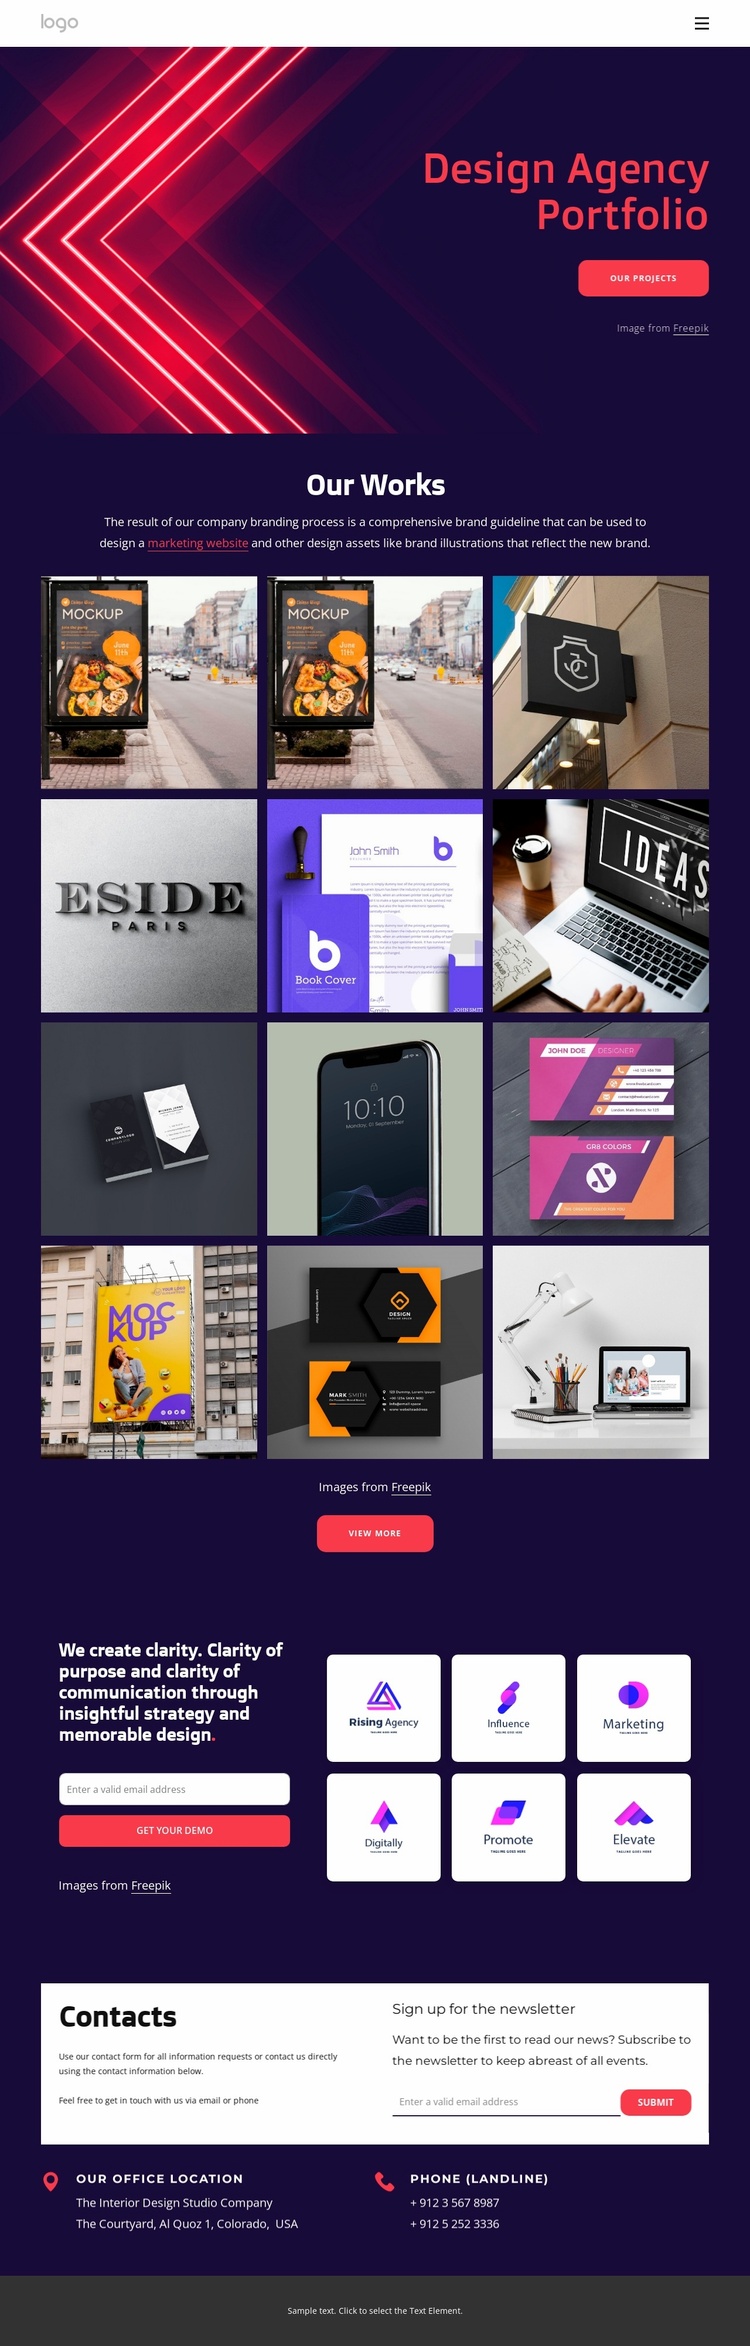 Design agency portfolio Website Template